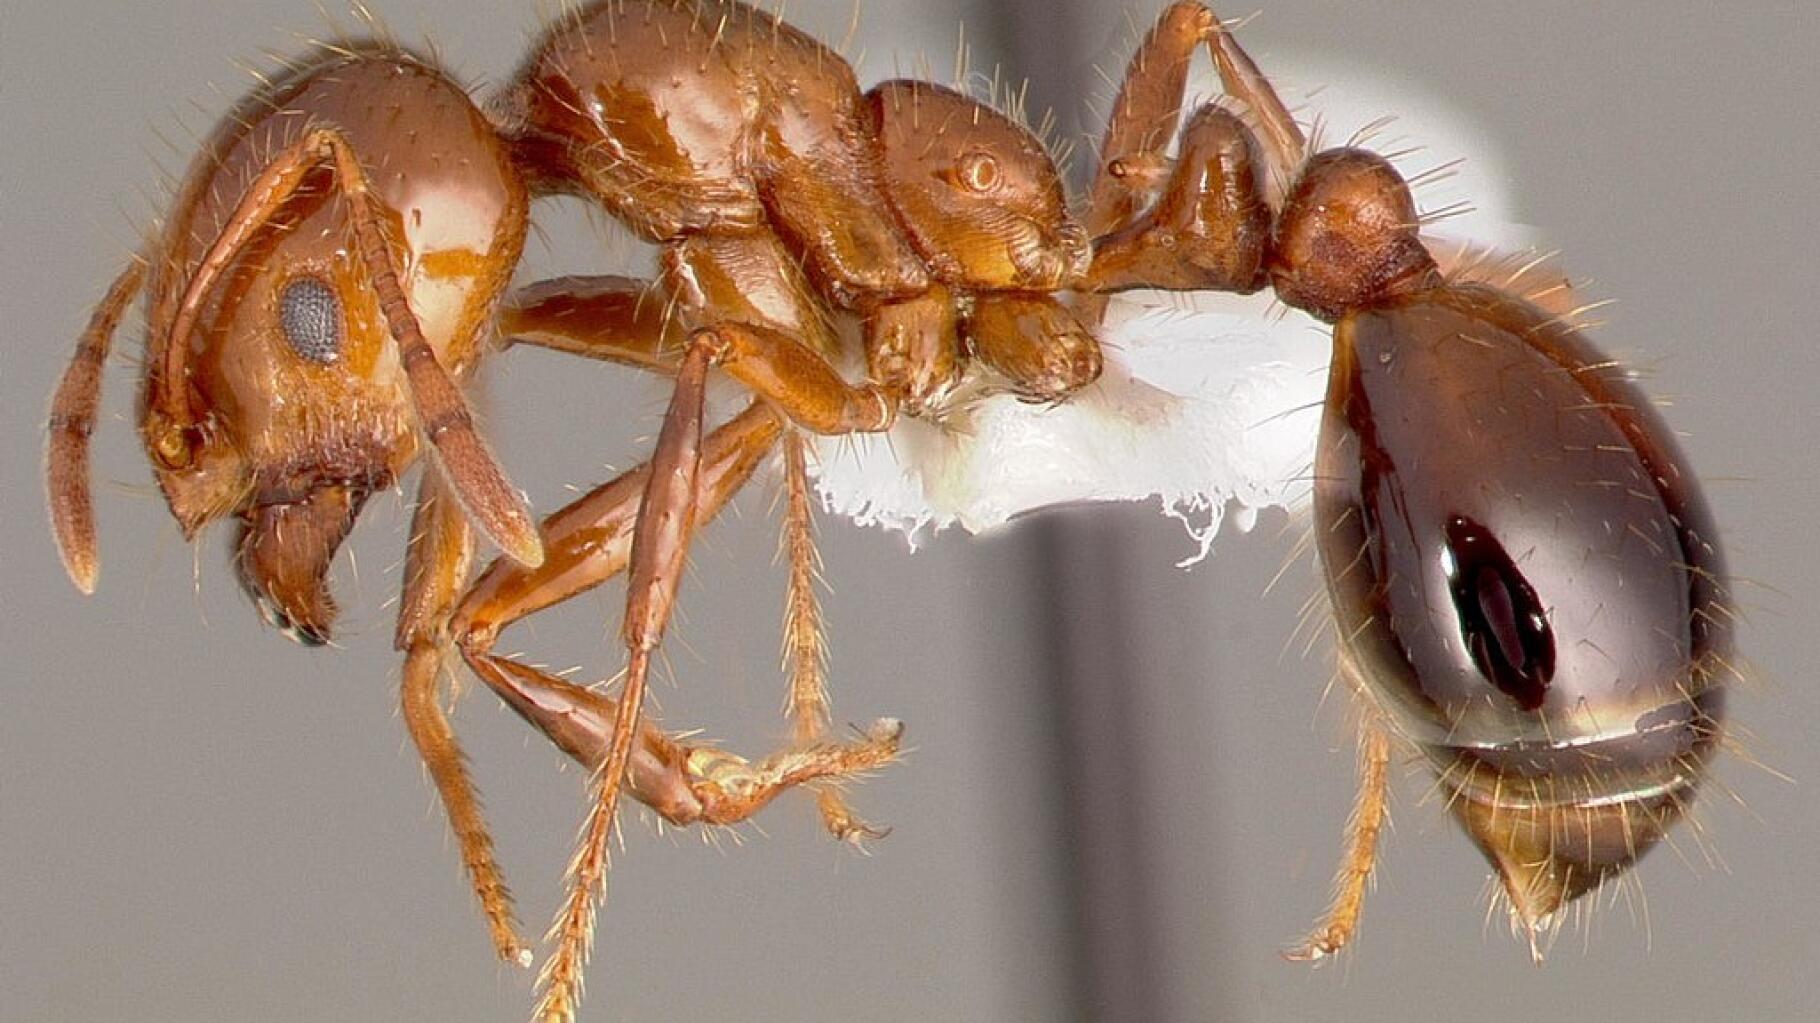 Quelles sont les espèces de fourmis courantes en France ? - SOLUTY